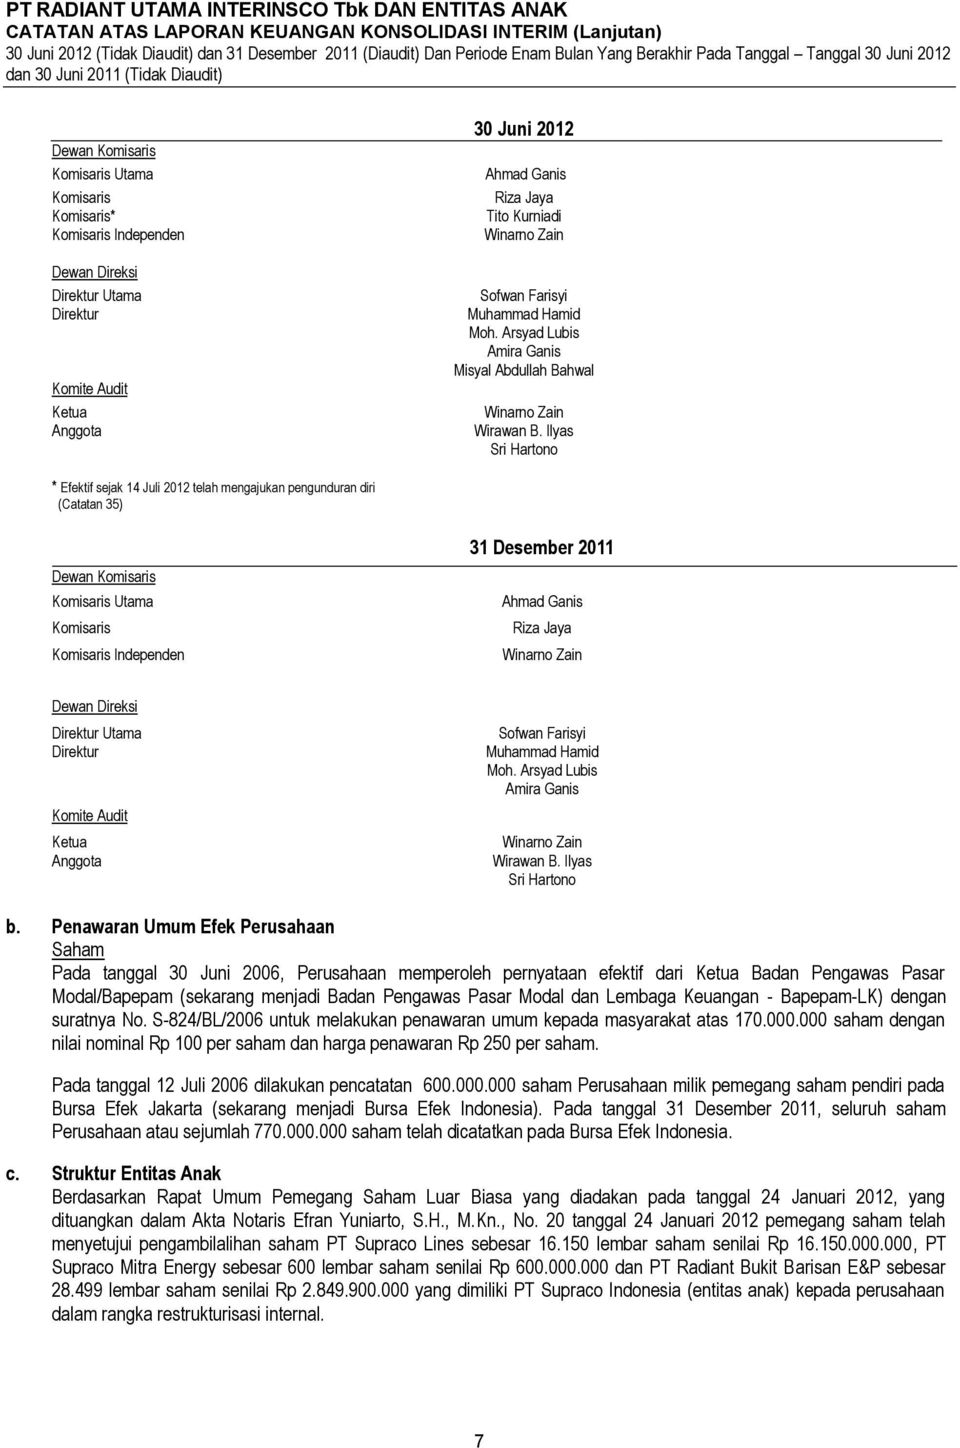 Ilyas Sri Hartono * Efektif sejak 14 Juli 2012 telah mengajukan pengunduran diri (Catatan 35) 31 Desember 2011 Dewan Komisaris Komisaris Utama Komisaris Komisaris Independen Ahmad Ganis Riza Jaya